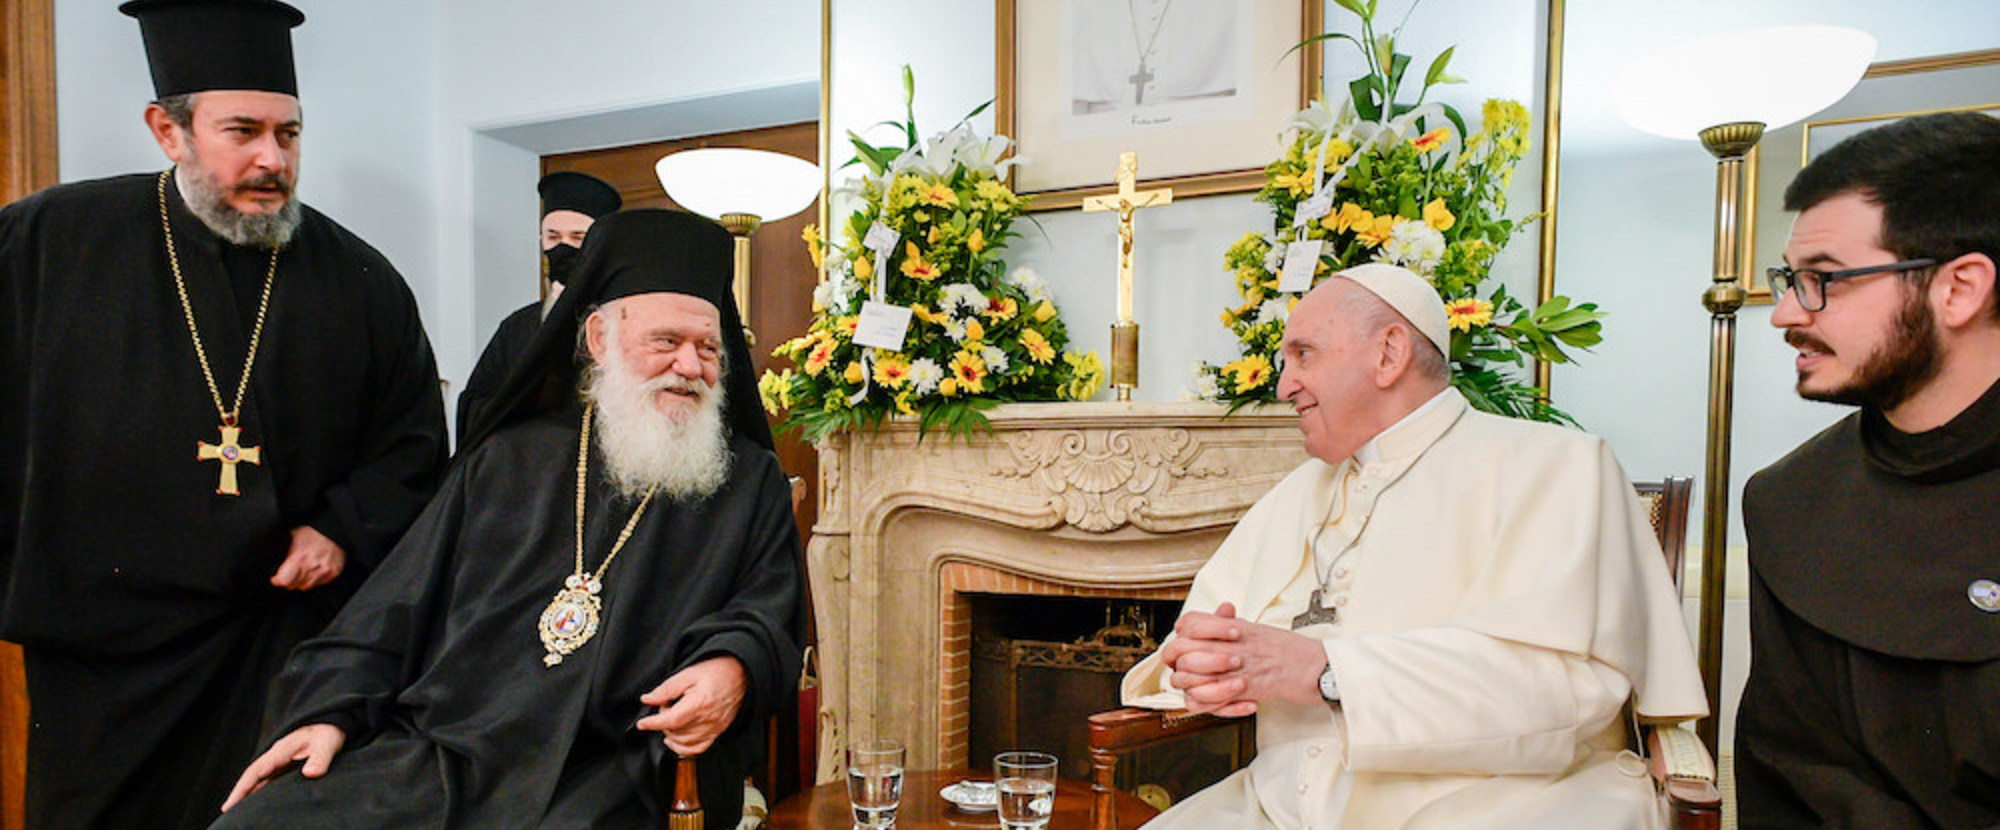 Hieronymus II., orthodoxer Erzbischof von Athen und ganz Griechenland, und Papst Franziskus bei einem Treffen am 5. Dezember 2021 in der Apostolischen Nuntiatur in Athen (Griechenland).